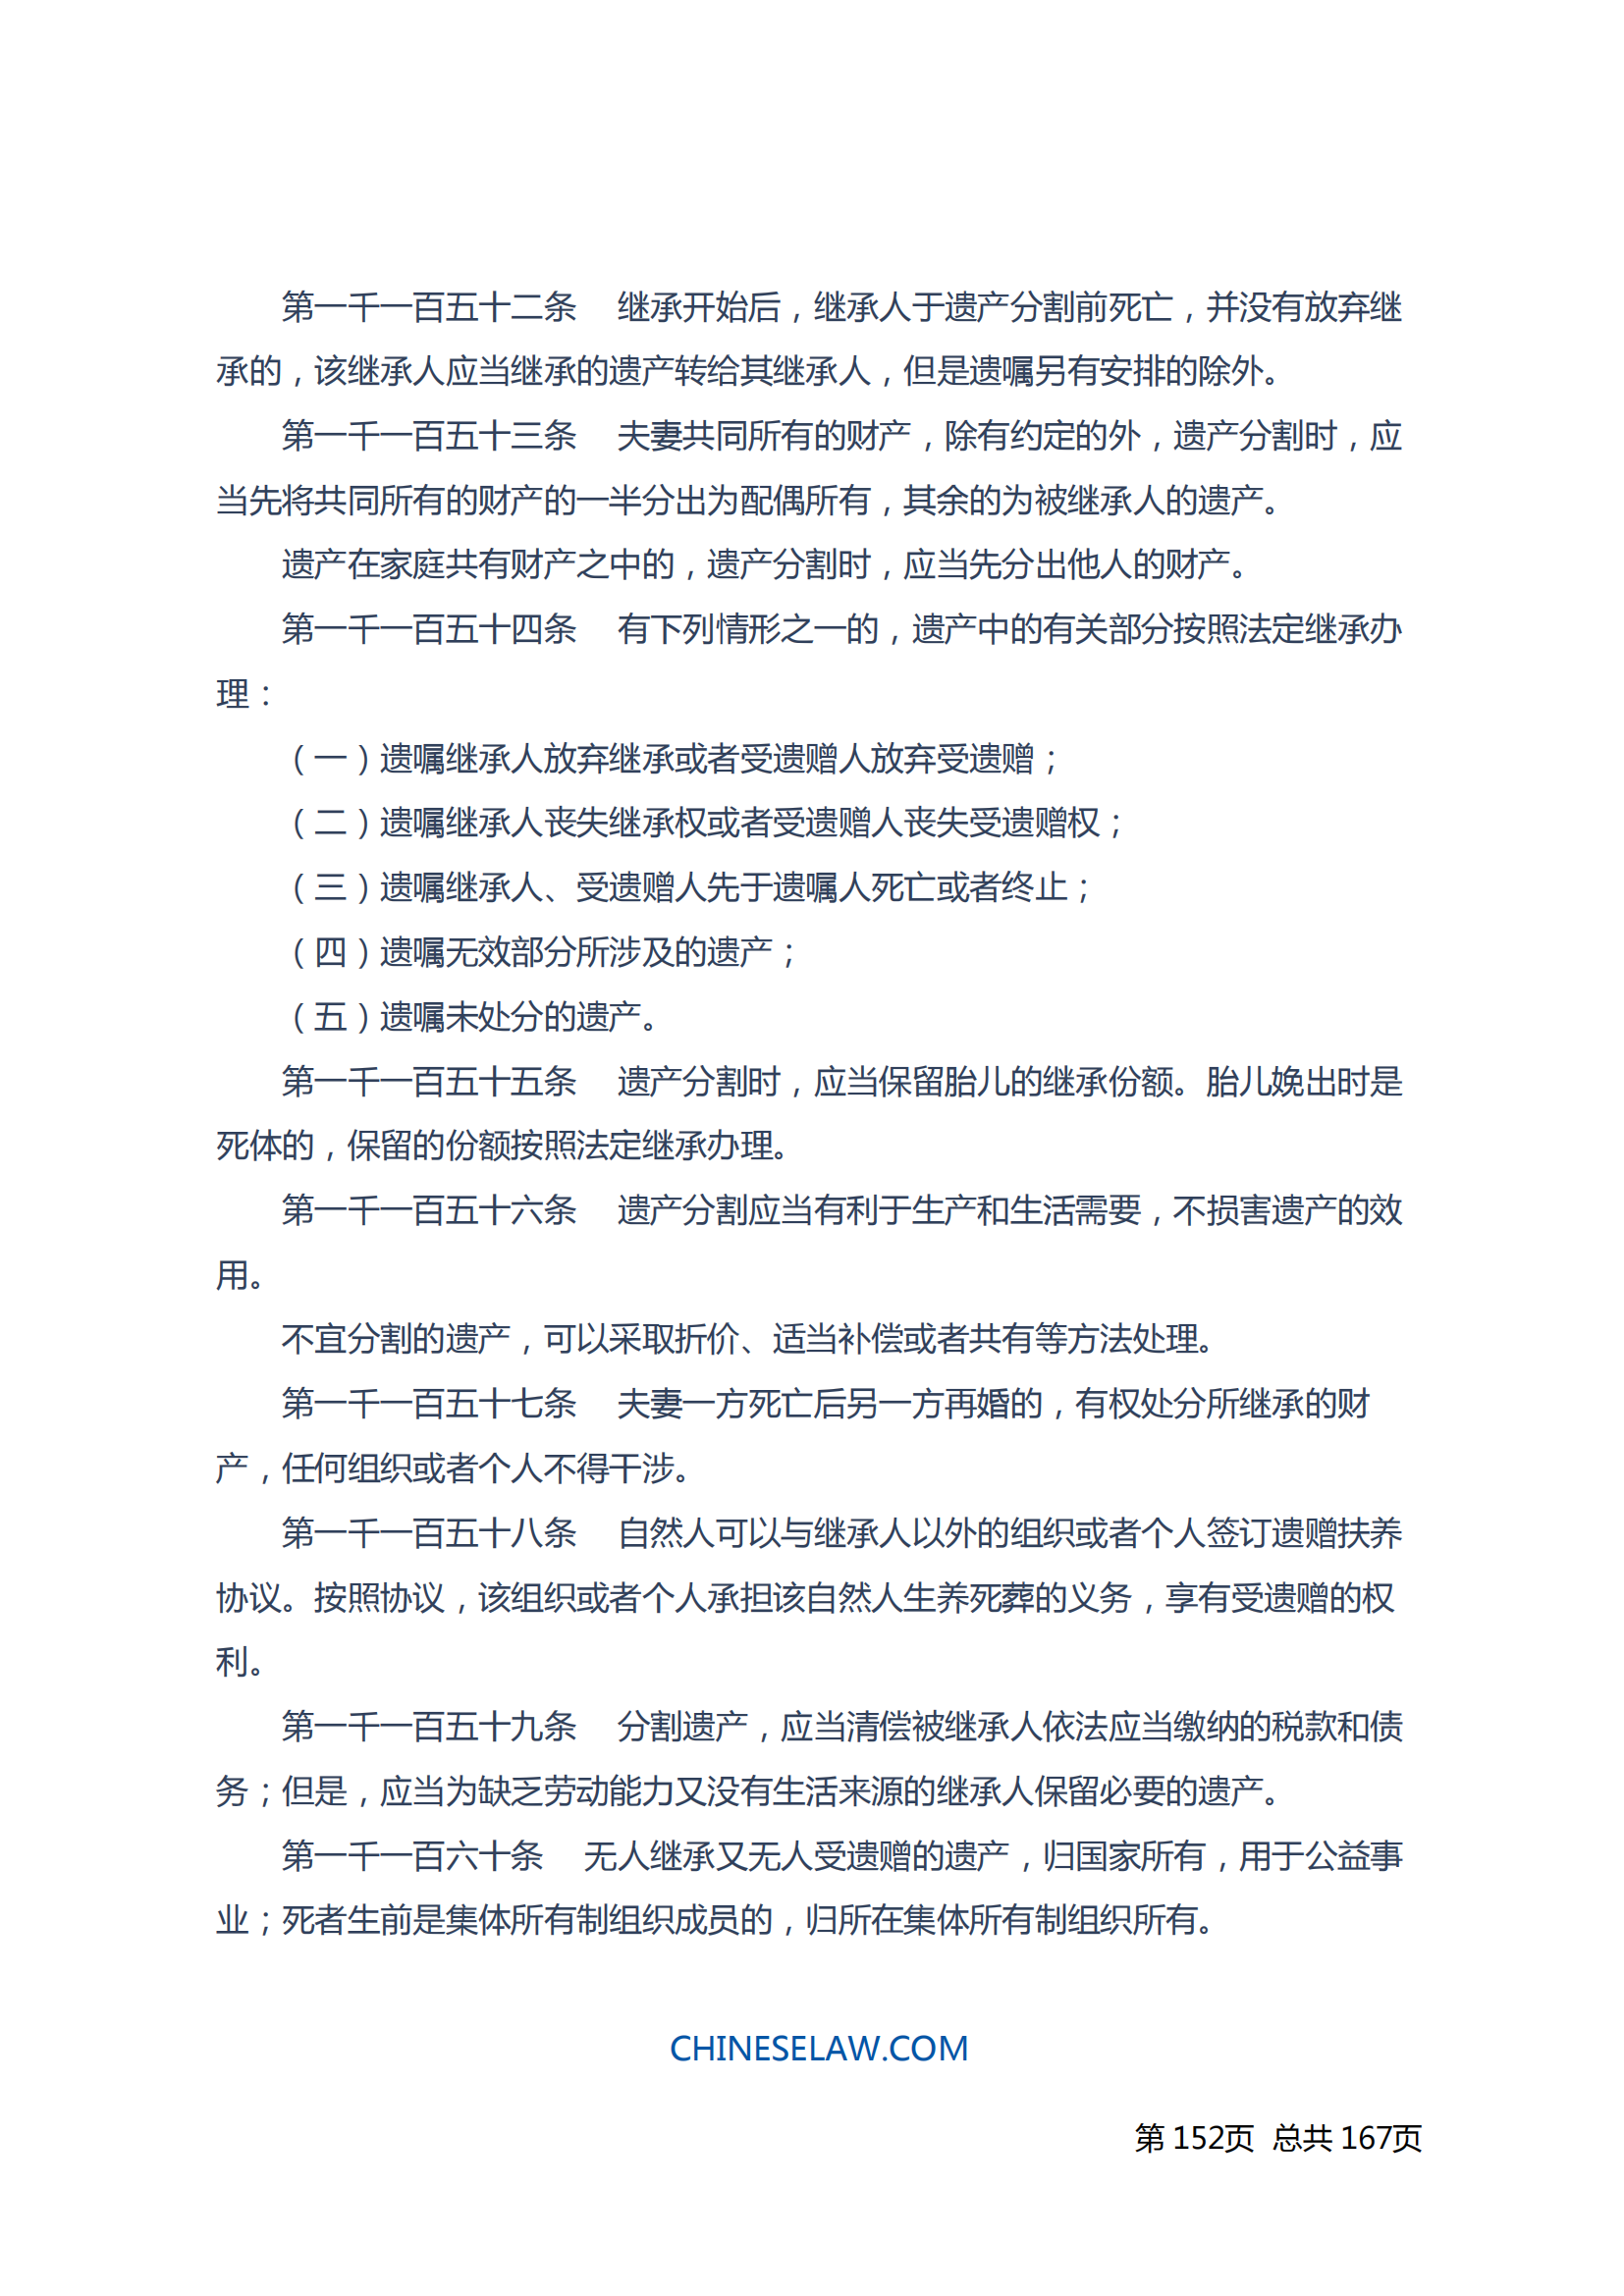 中华人民共和国民法典_151